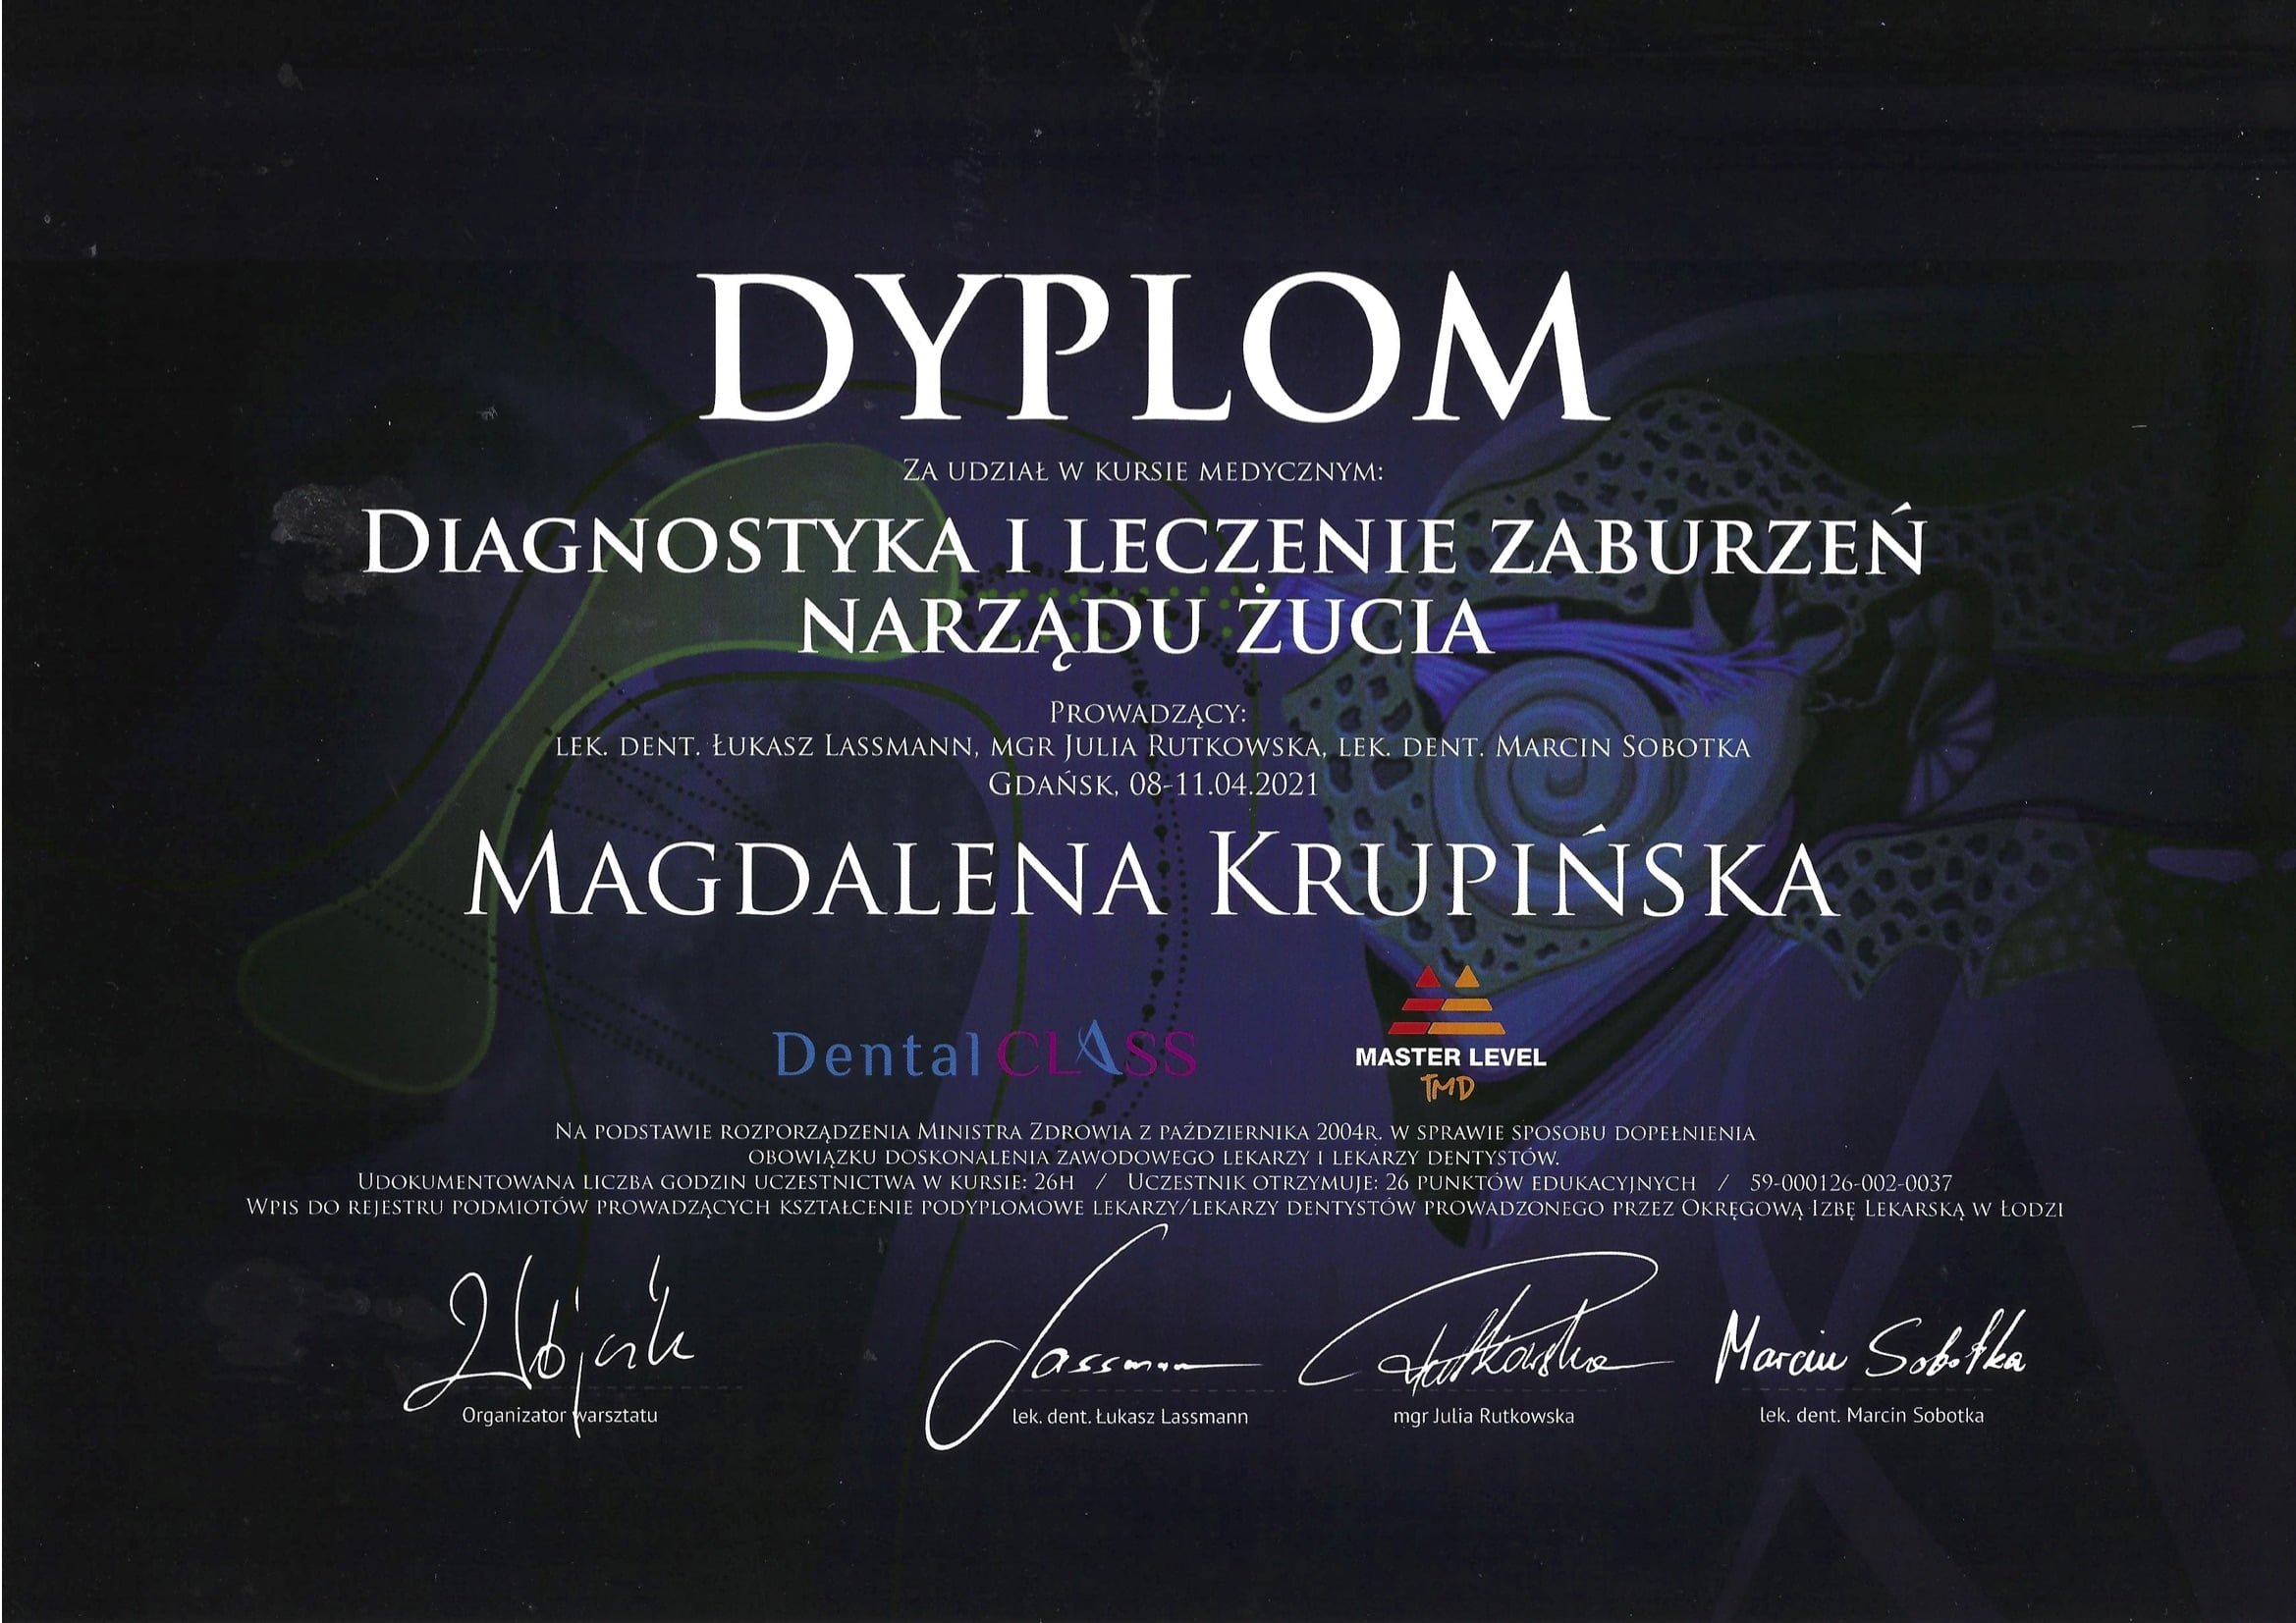 Magdalena Krupińska certyfikat 25